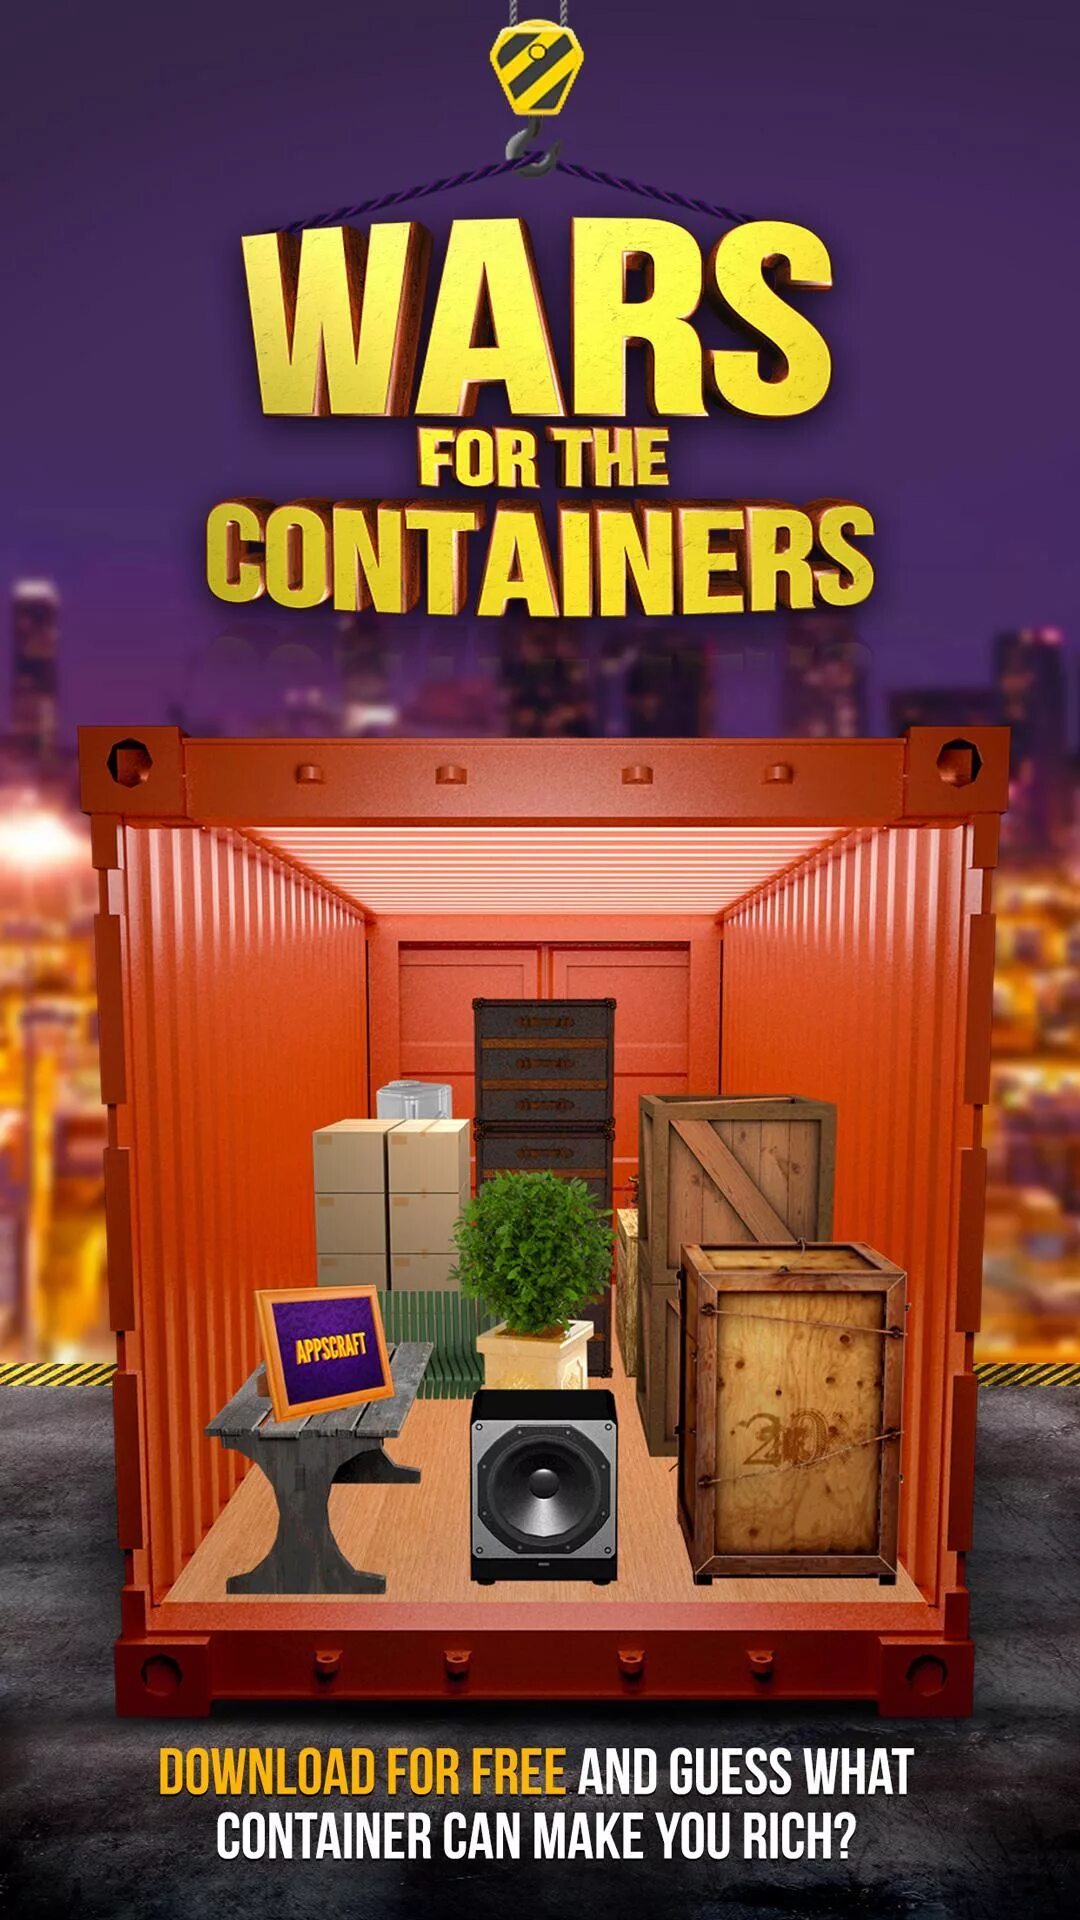 Битва за контейнеры. Шоу контейнеры. Битва за контейнеры игра. Битва за контейнеры Дискавери. Битвы за контейнеры лучшее